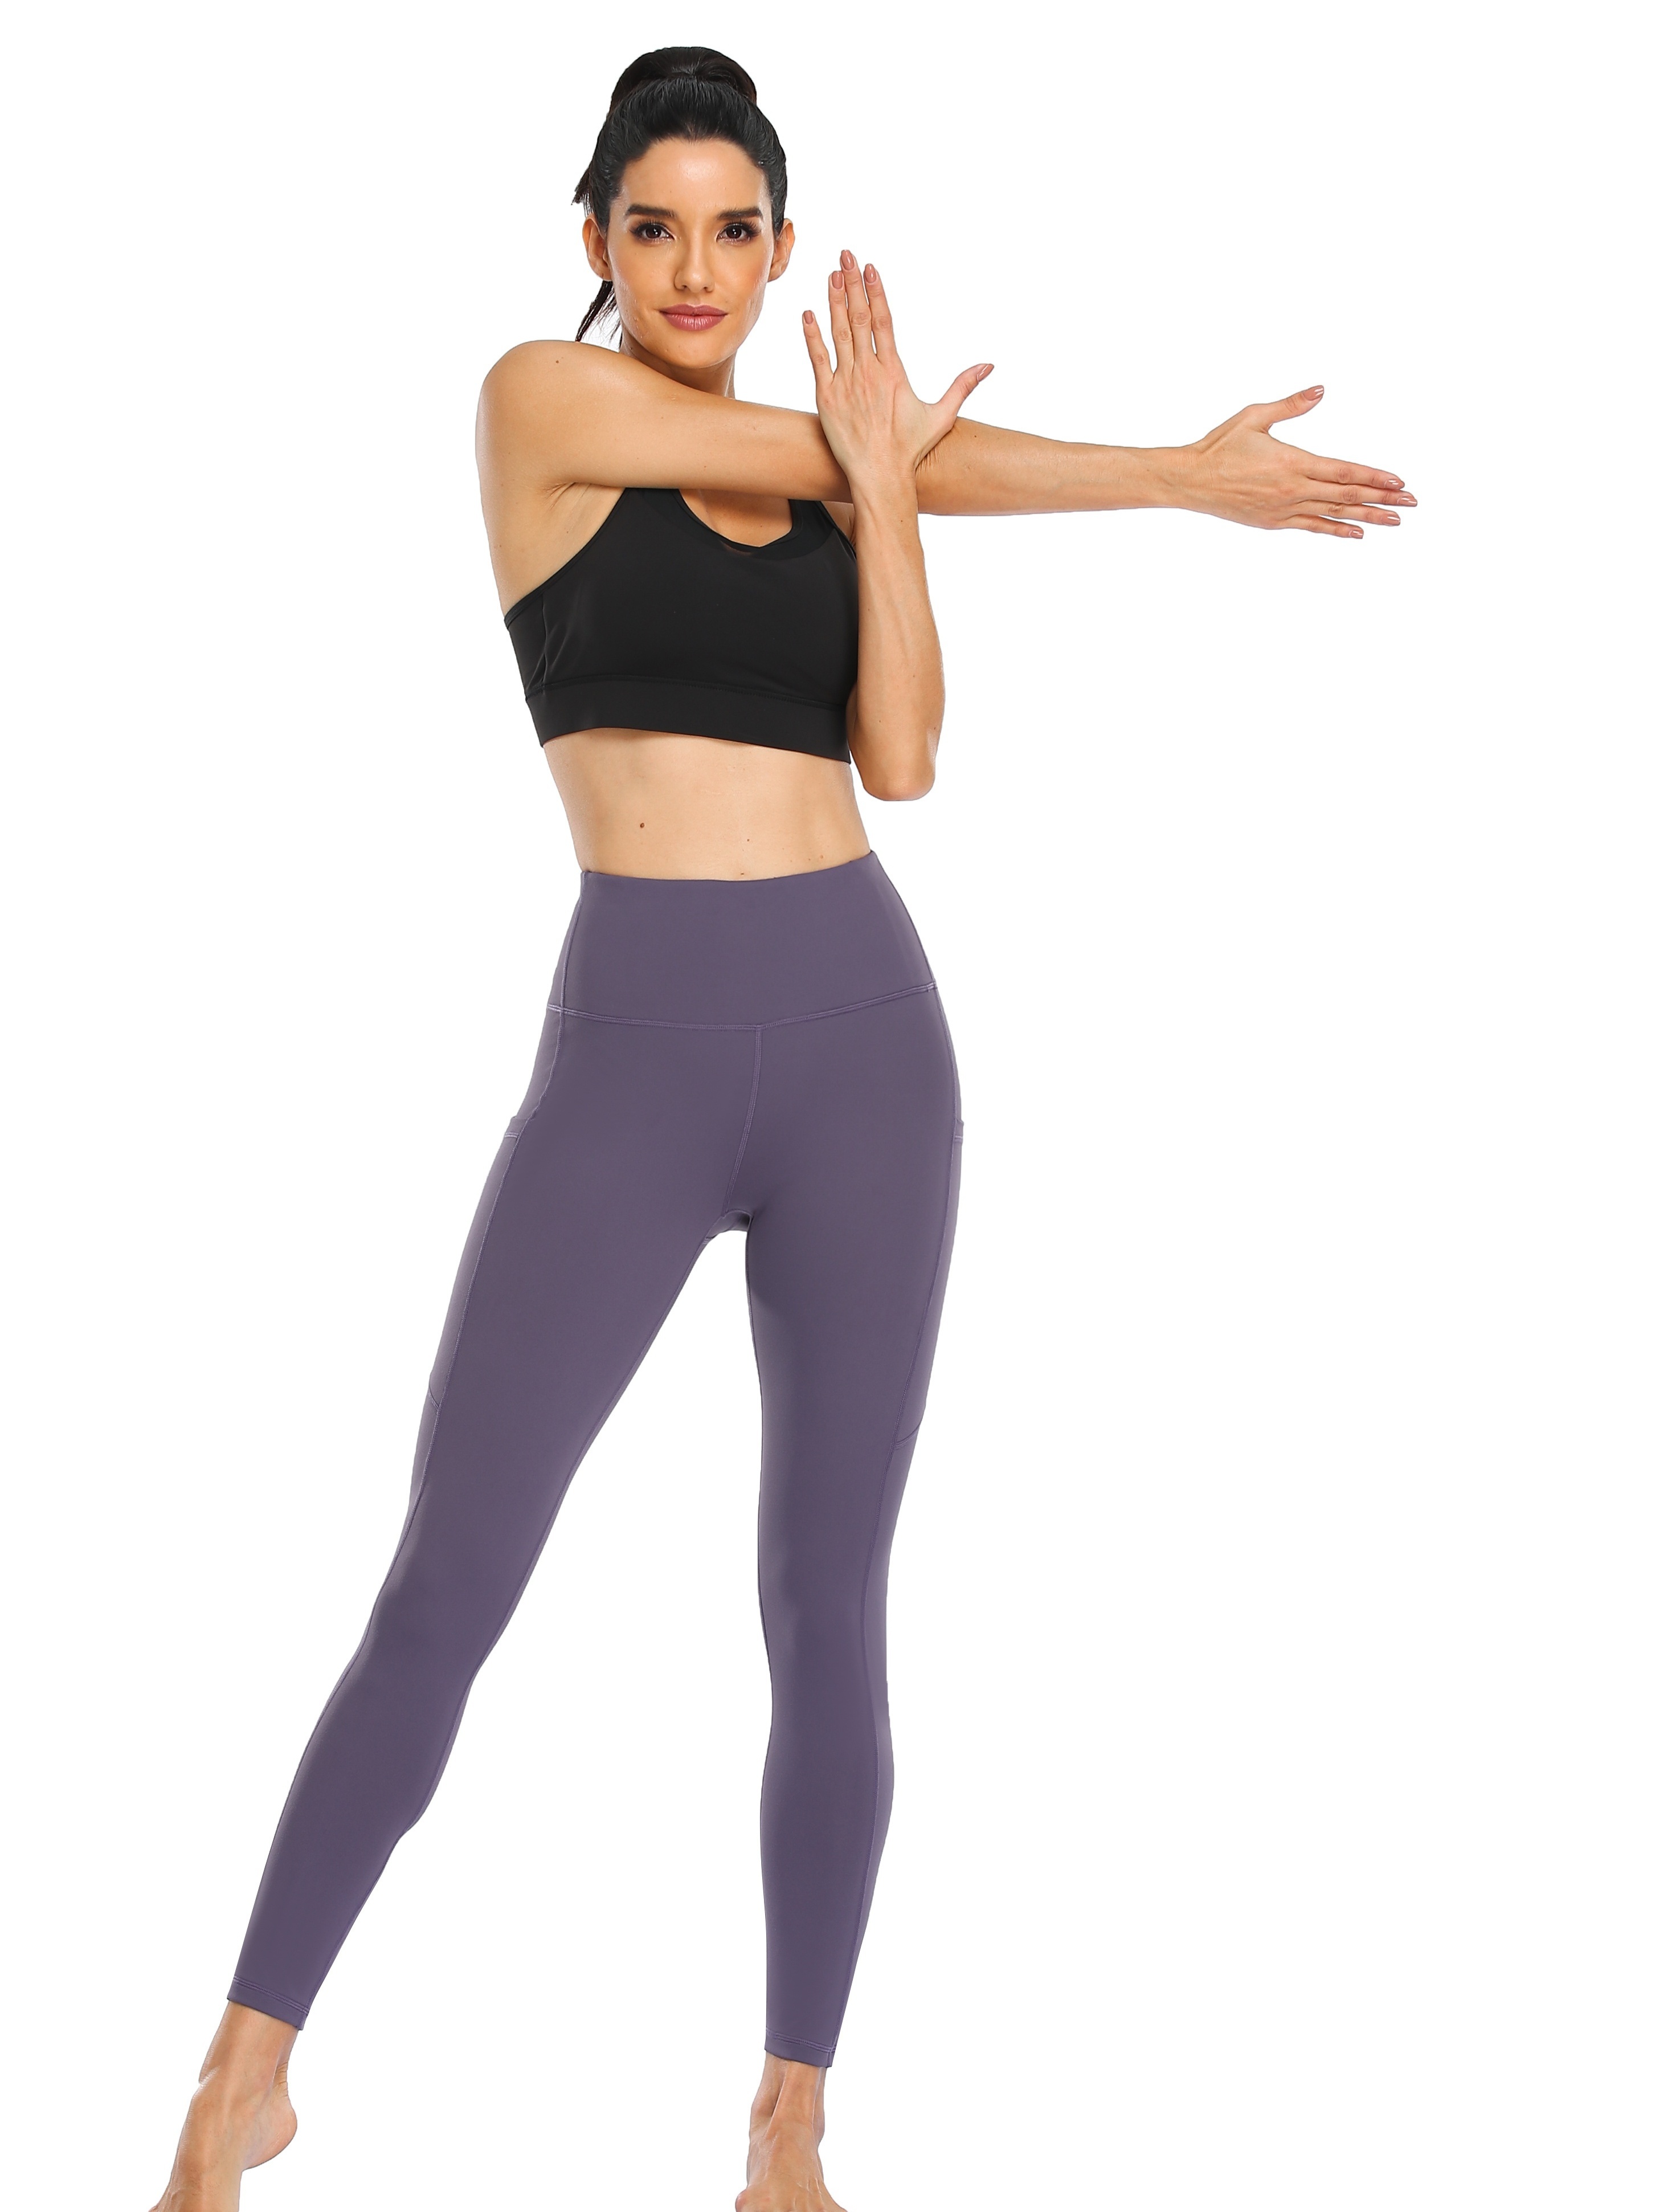 Bodychum High Waist Yoga Leggings with 3 Pockets, Tummy Control